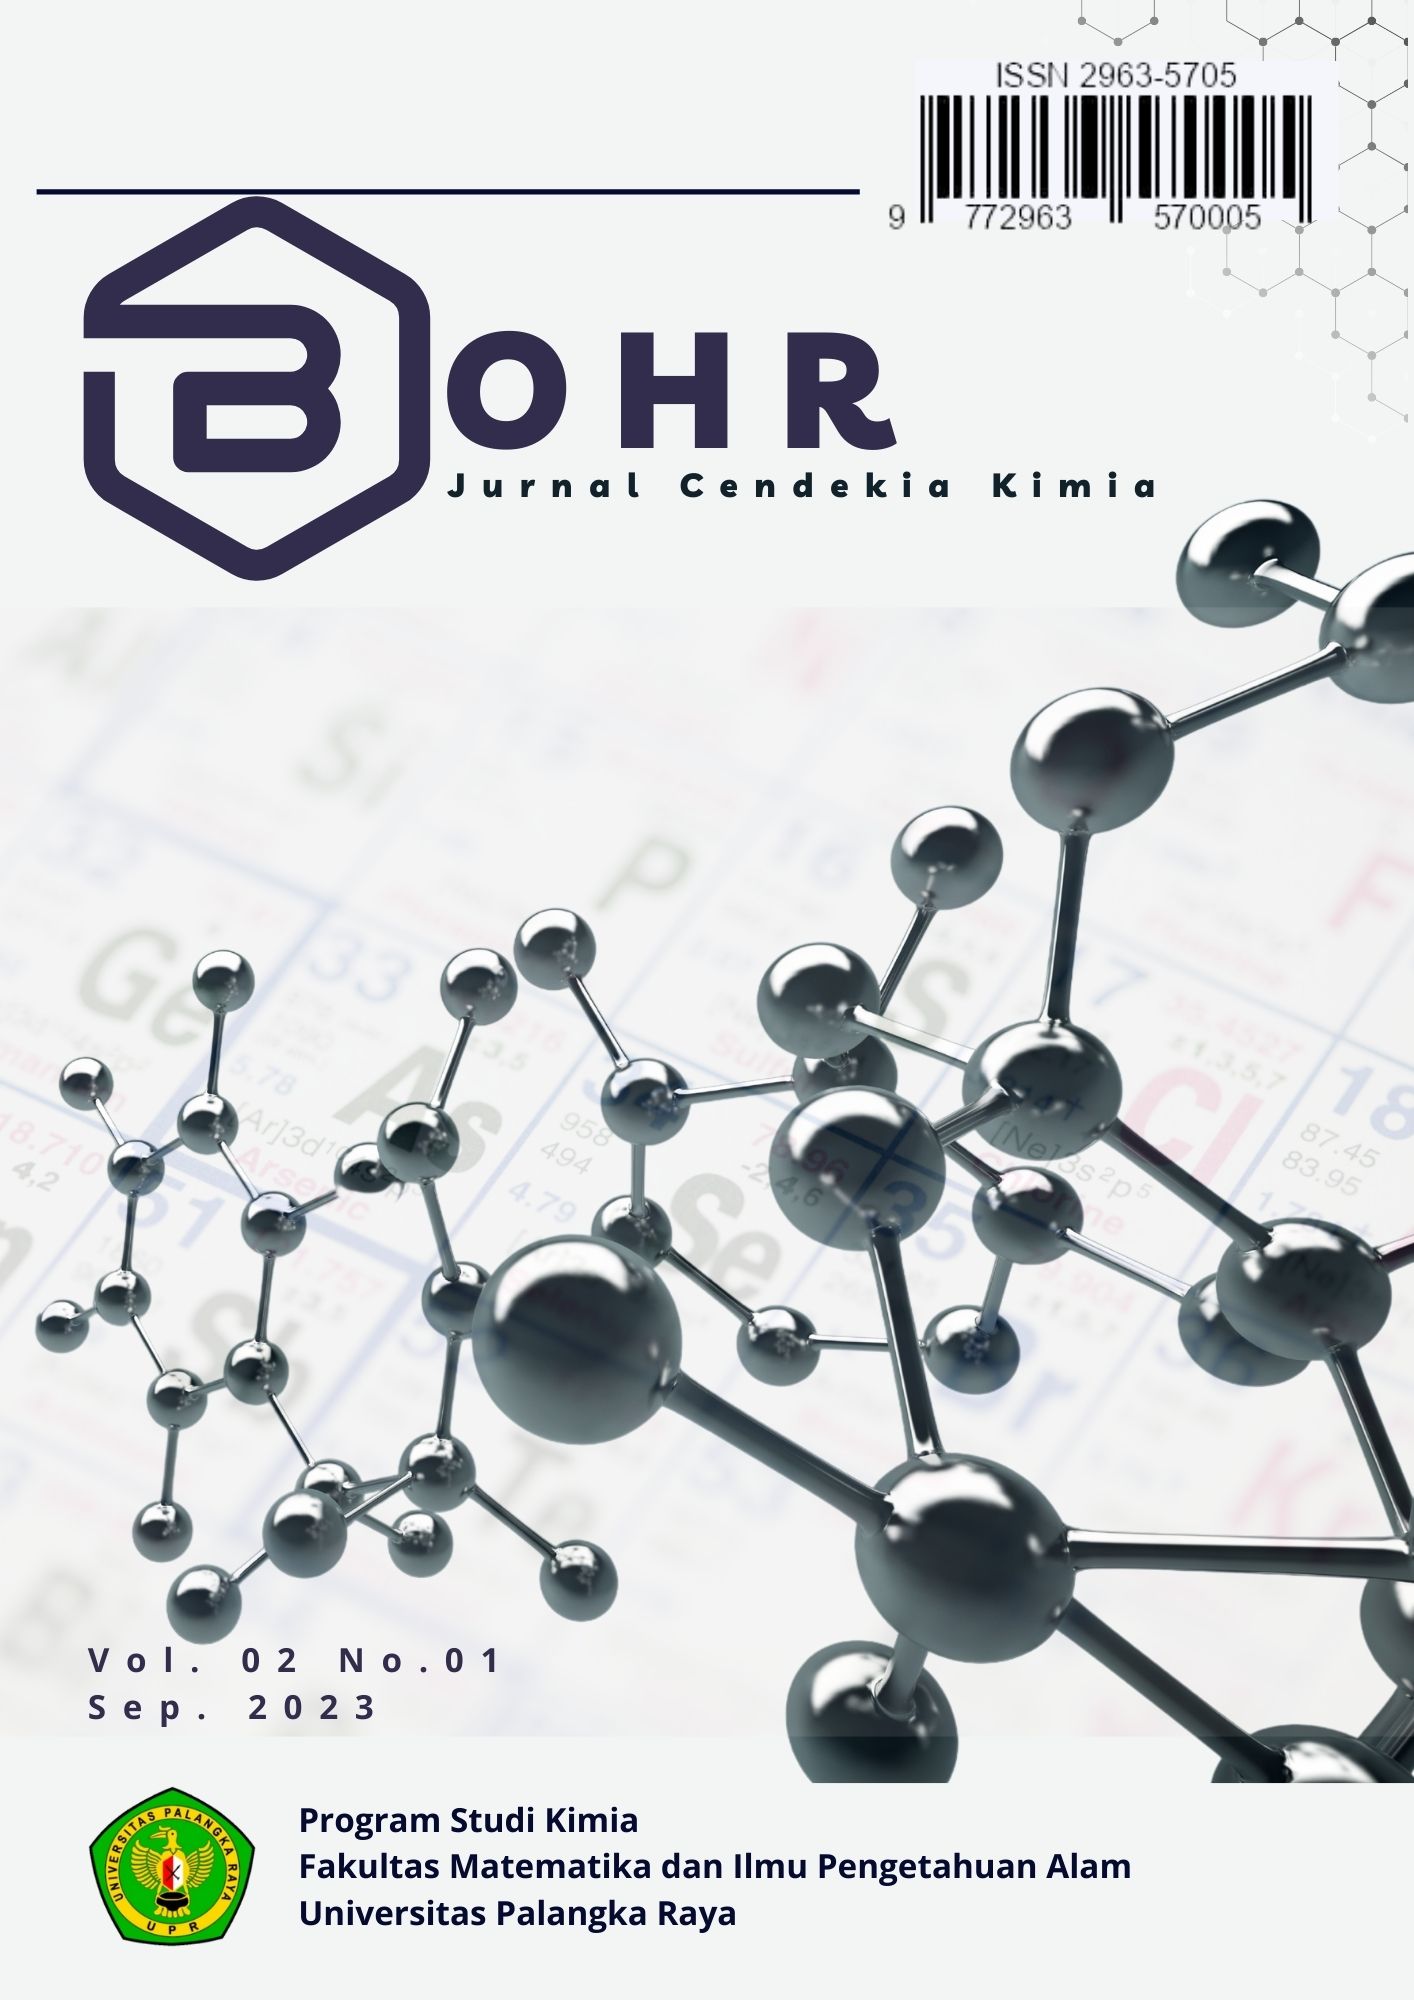 					Lihat Vol 2 No 01 (2023): Bohr: Jurnal Cendekia Kimia Vol 02 No 01
				